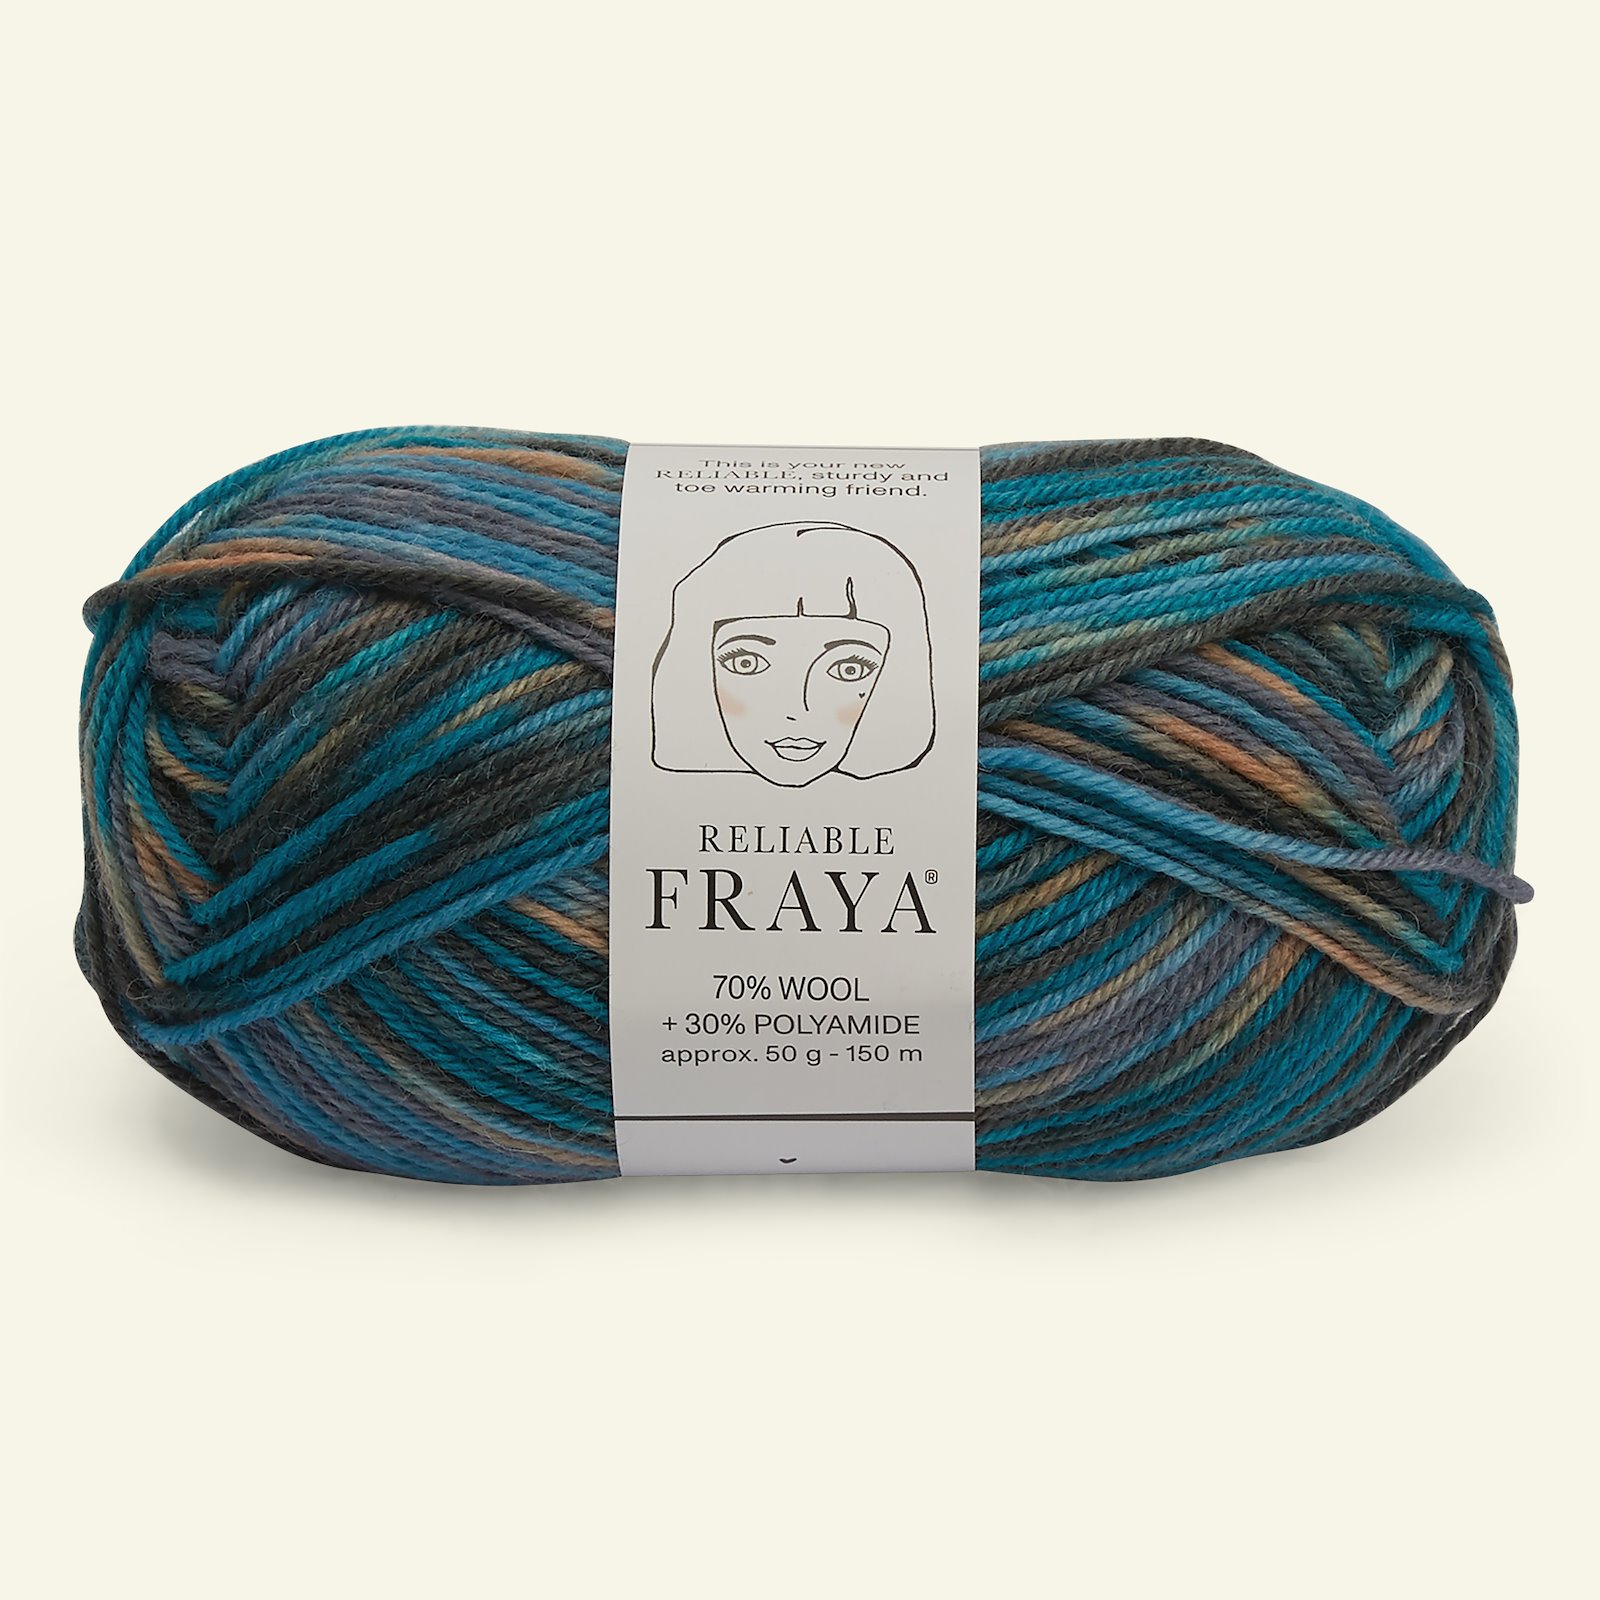 FRAYA, wool yarn "Reliable", petrol/grey mix col. 90001201_pack